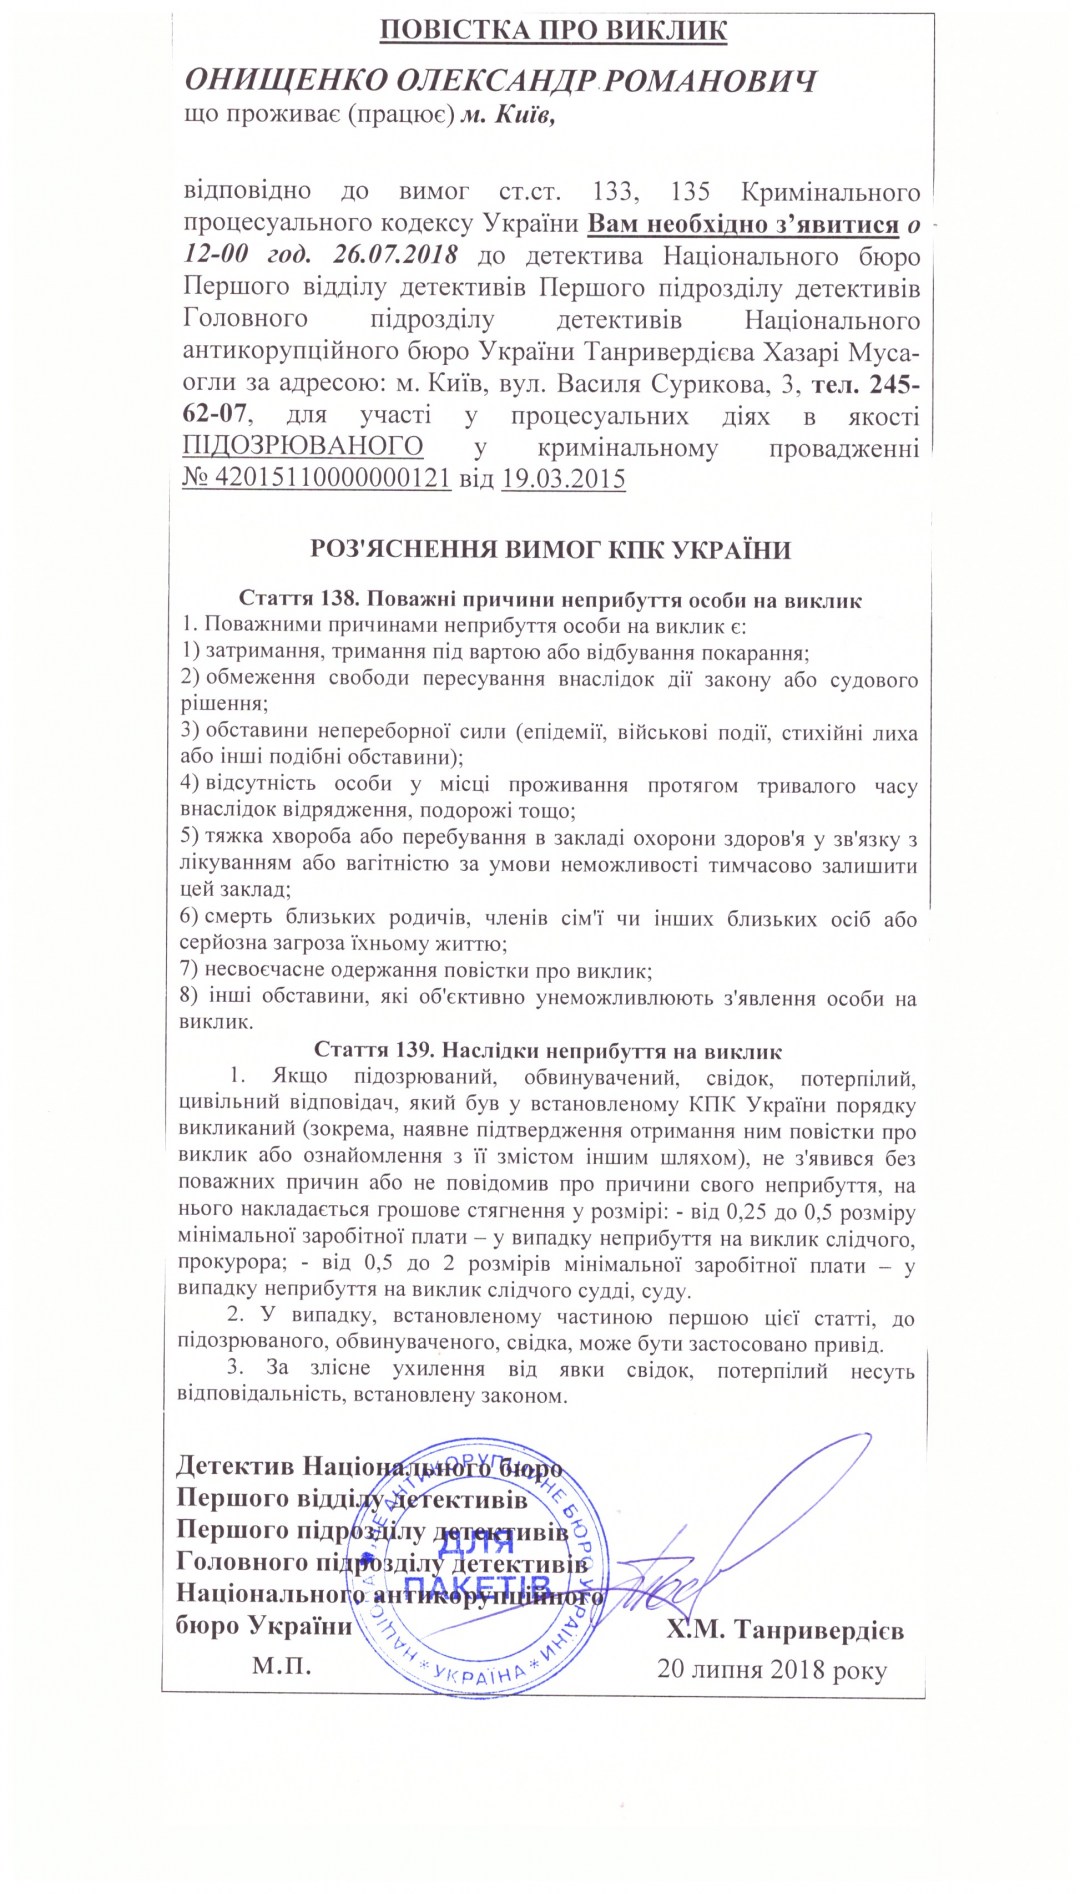 Національне антикорупційне бюро викликало на допит як підозрюваного народного депутата Олександра Онищенка, який є фігурантом так званого газового справи